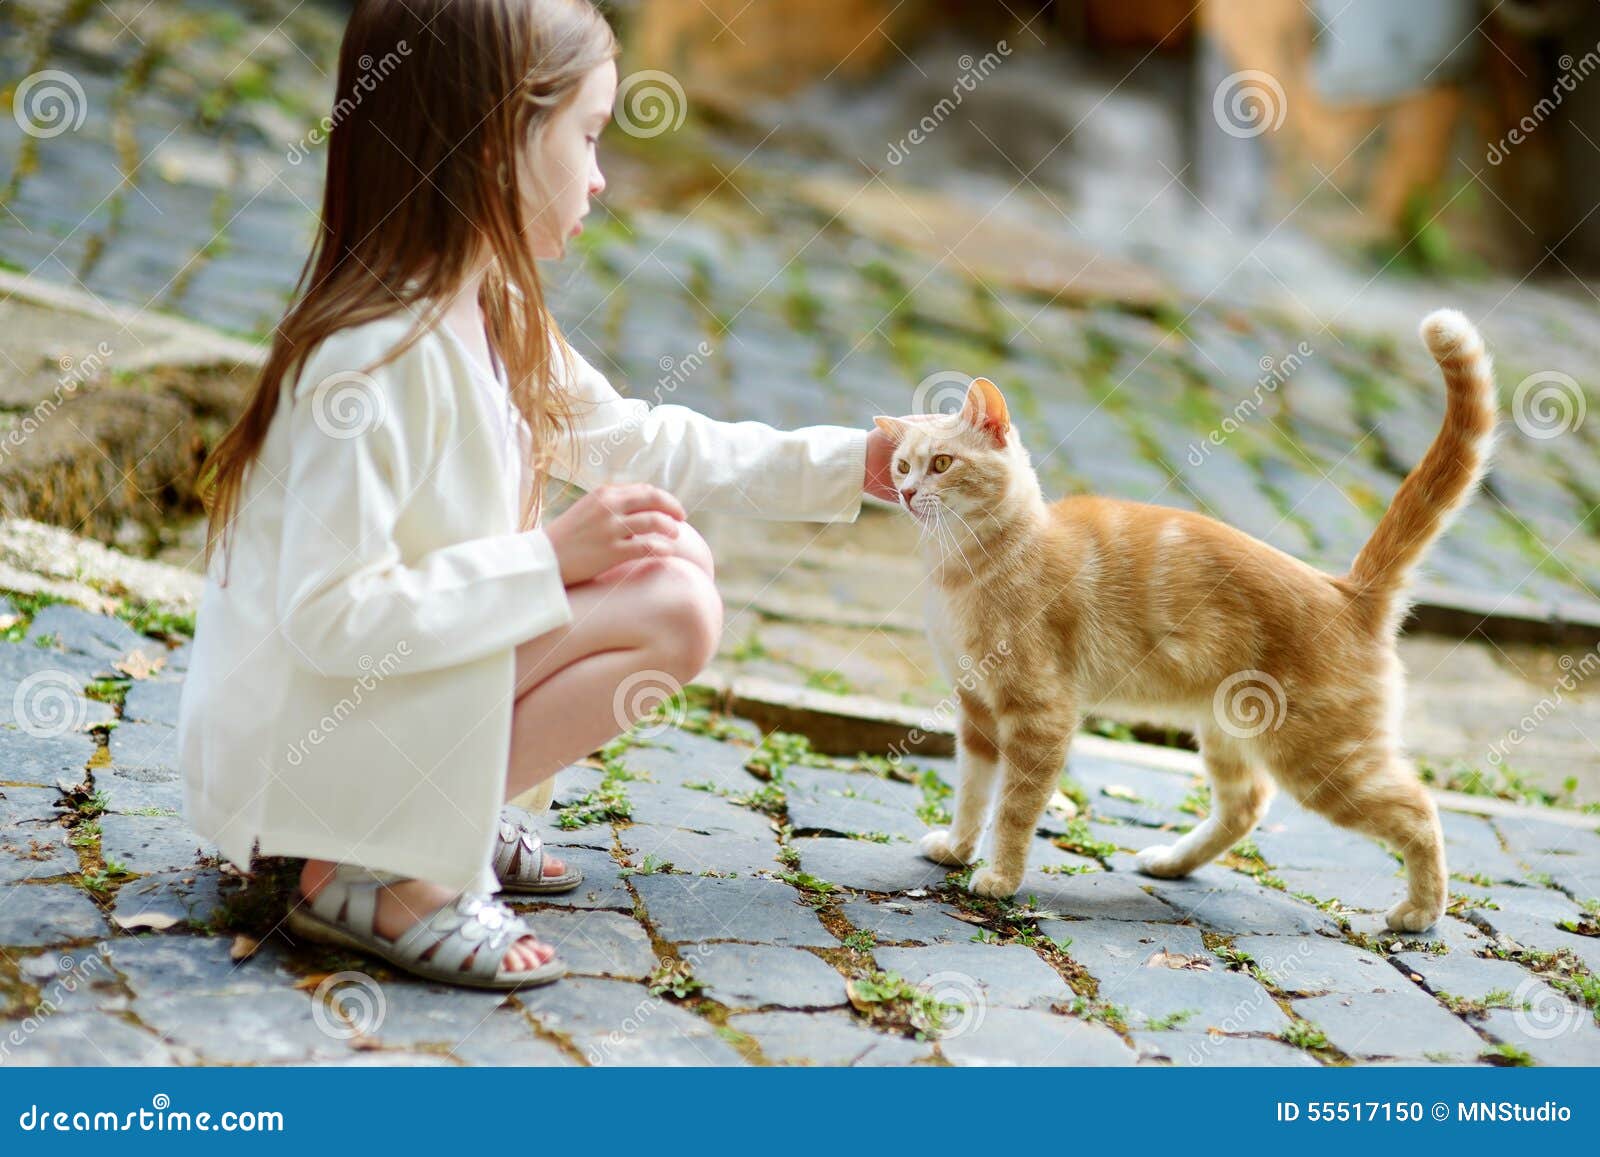 可爱小女孩和猫动漫壁纸_动漫壁纸_墨鱼部落格